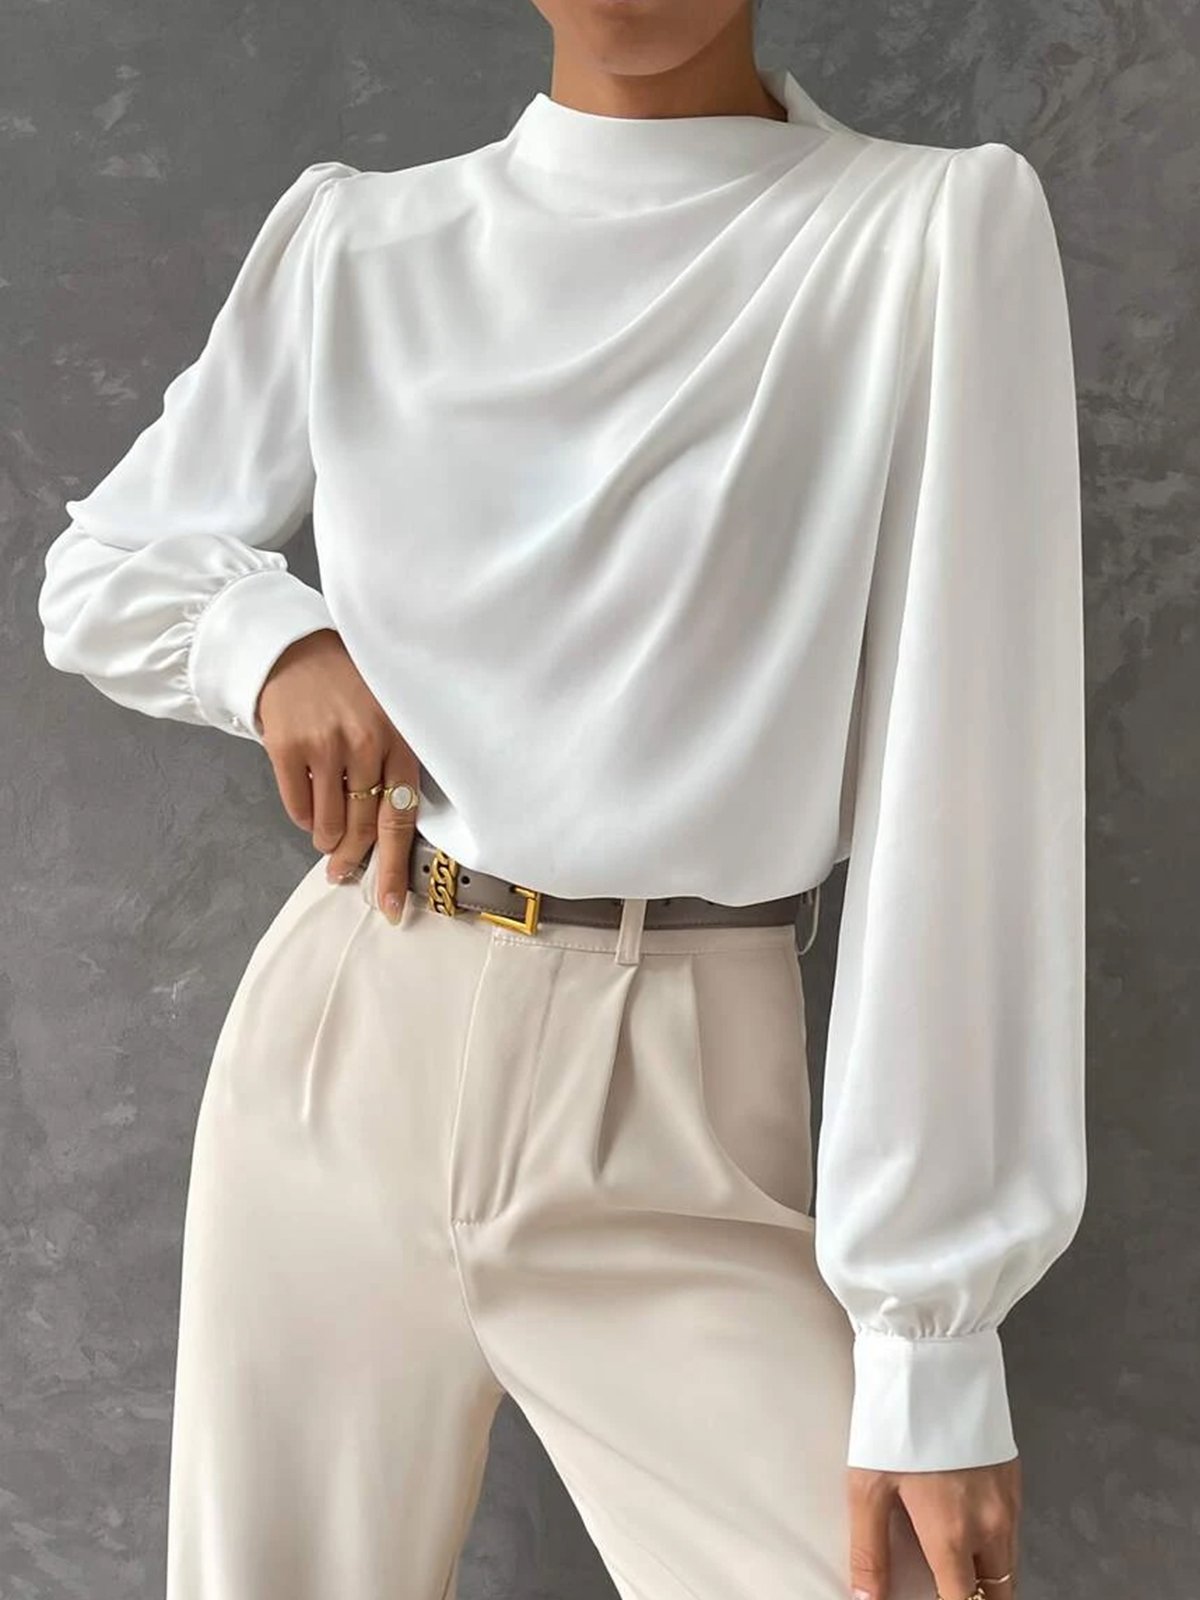 Stehkragen Elegant Unifarben Regelmäßige Passform Bluse